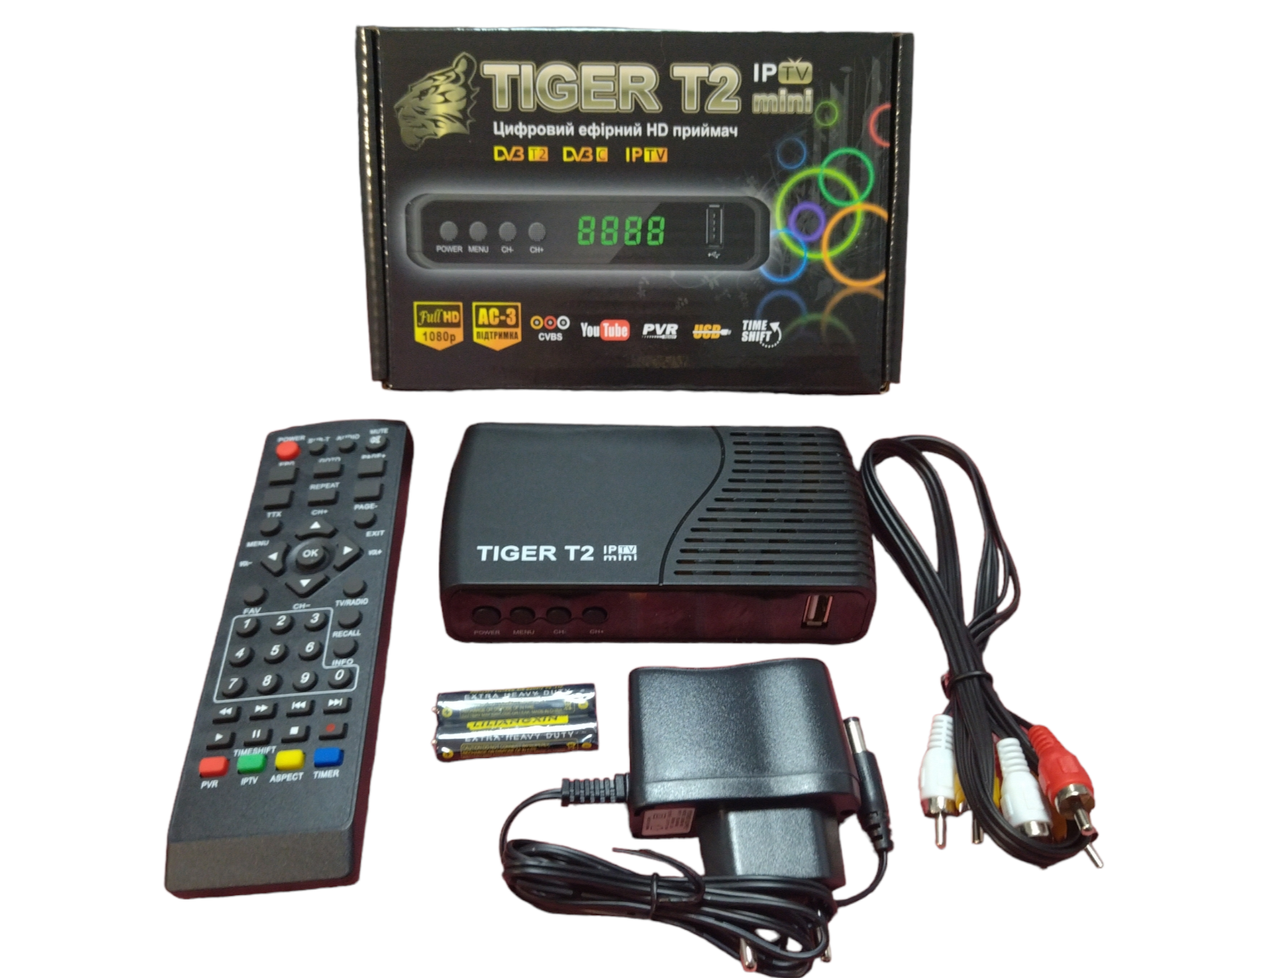 Т2 тюнер Tiger T2 mini